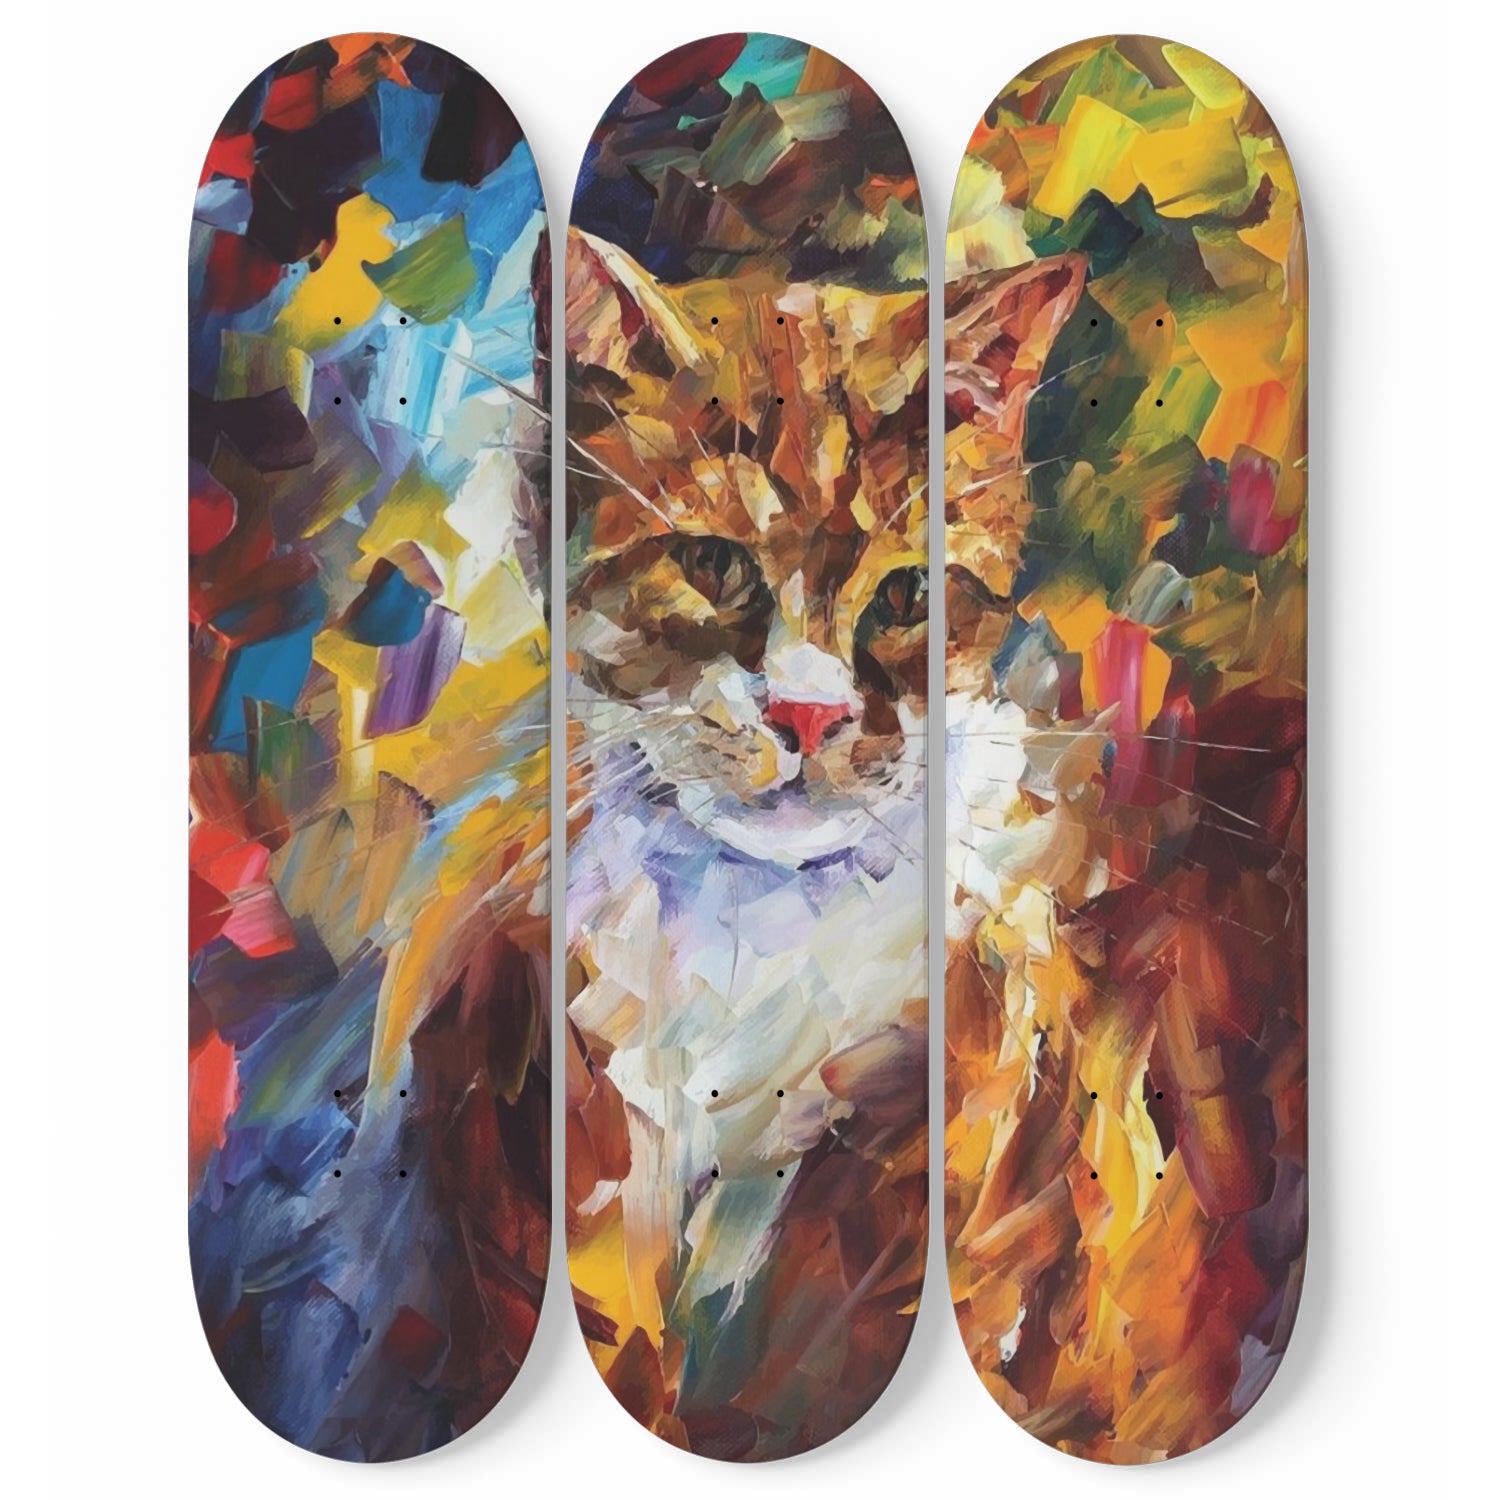 My Cat Abstract Art | Skateboard Deck Wall Art